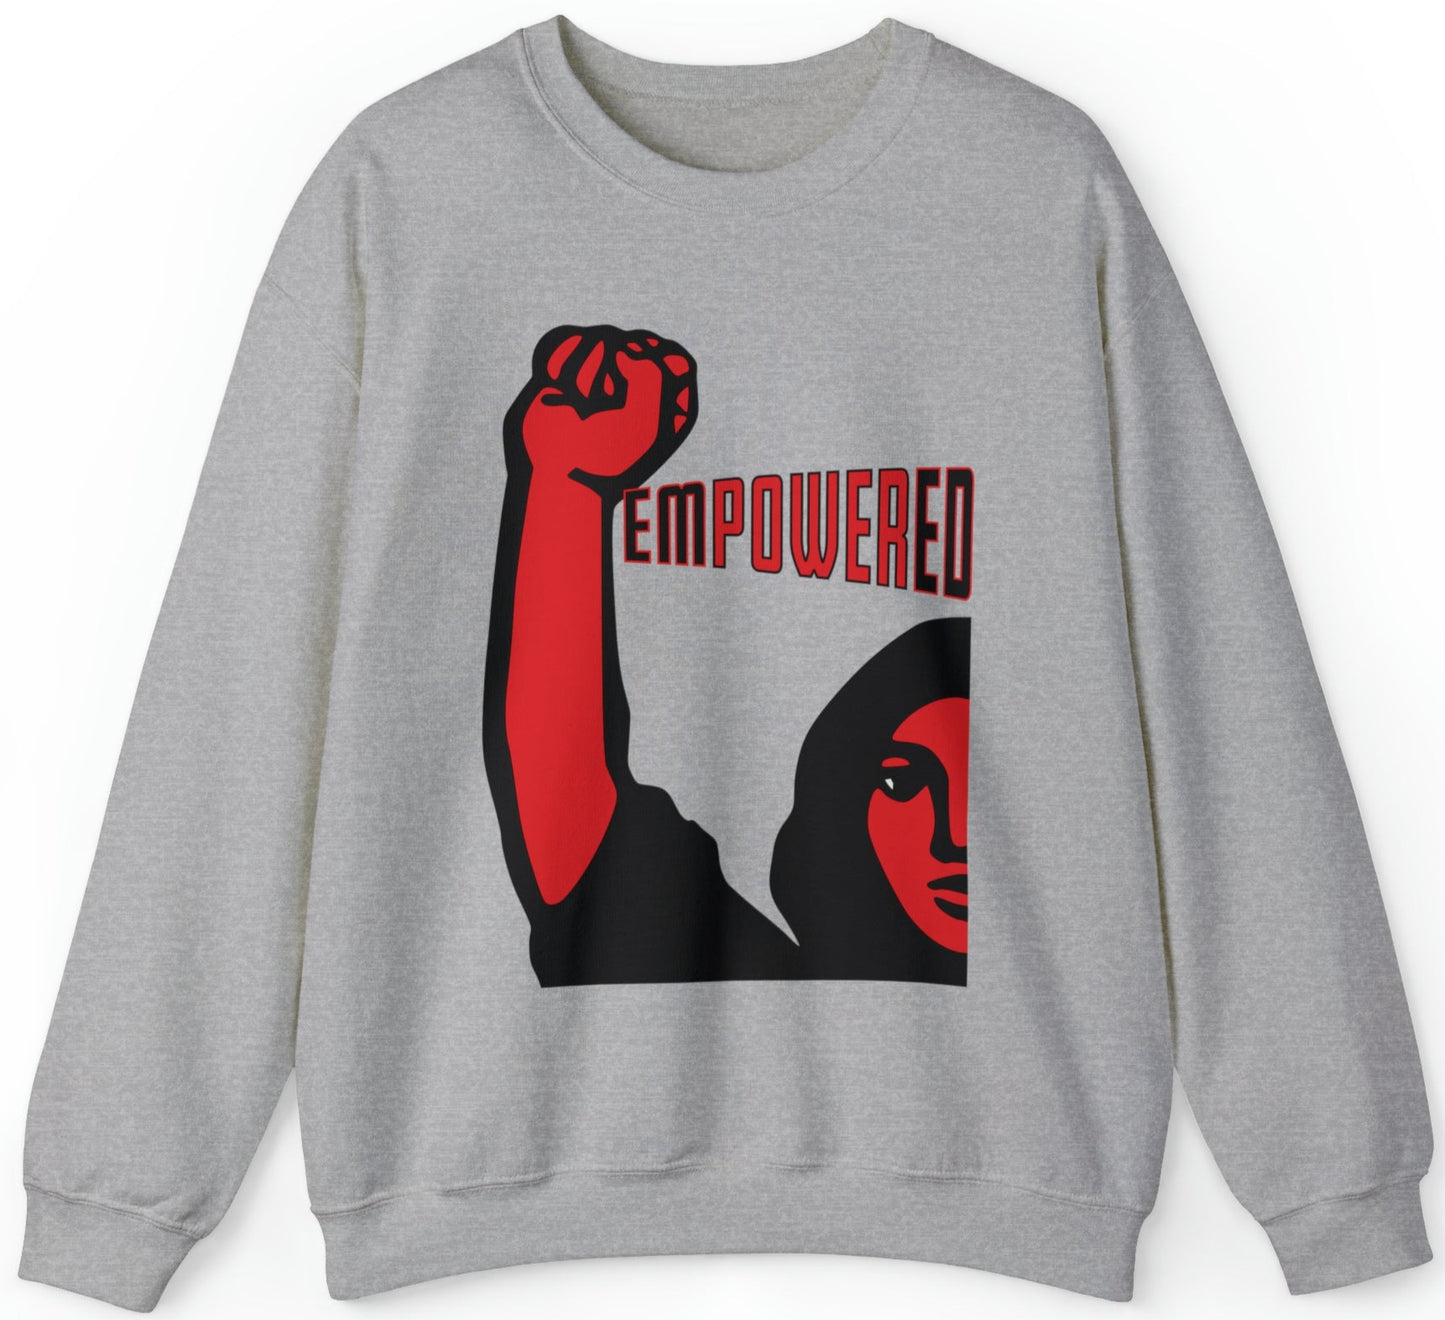 Empowered Women - Unisex Sweatshirt